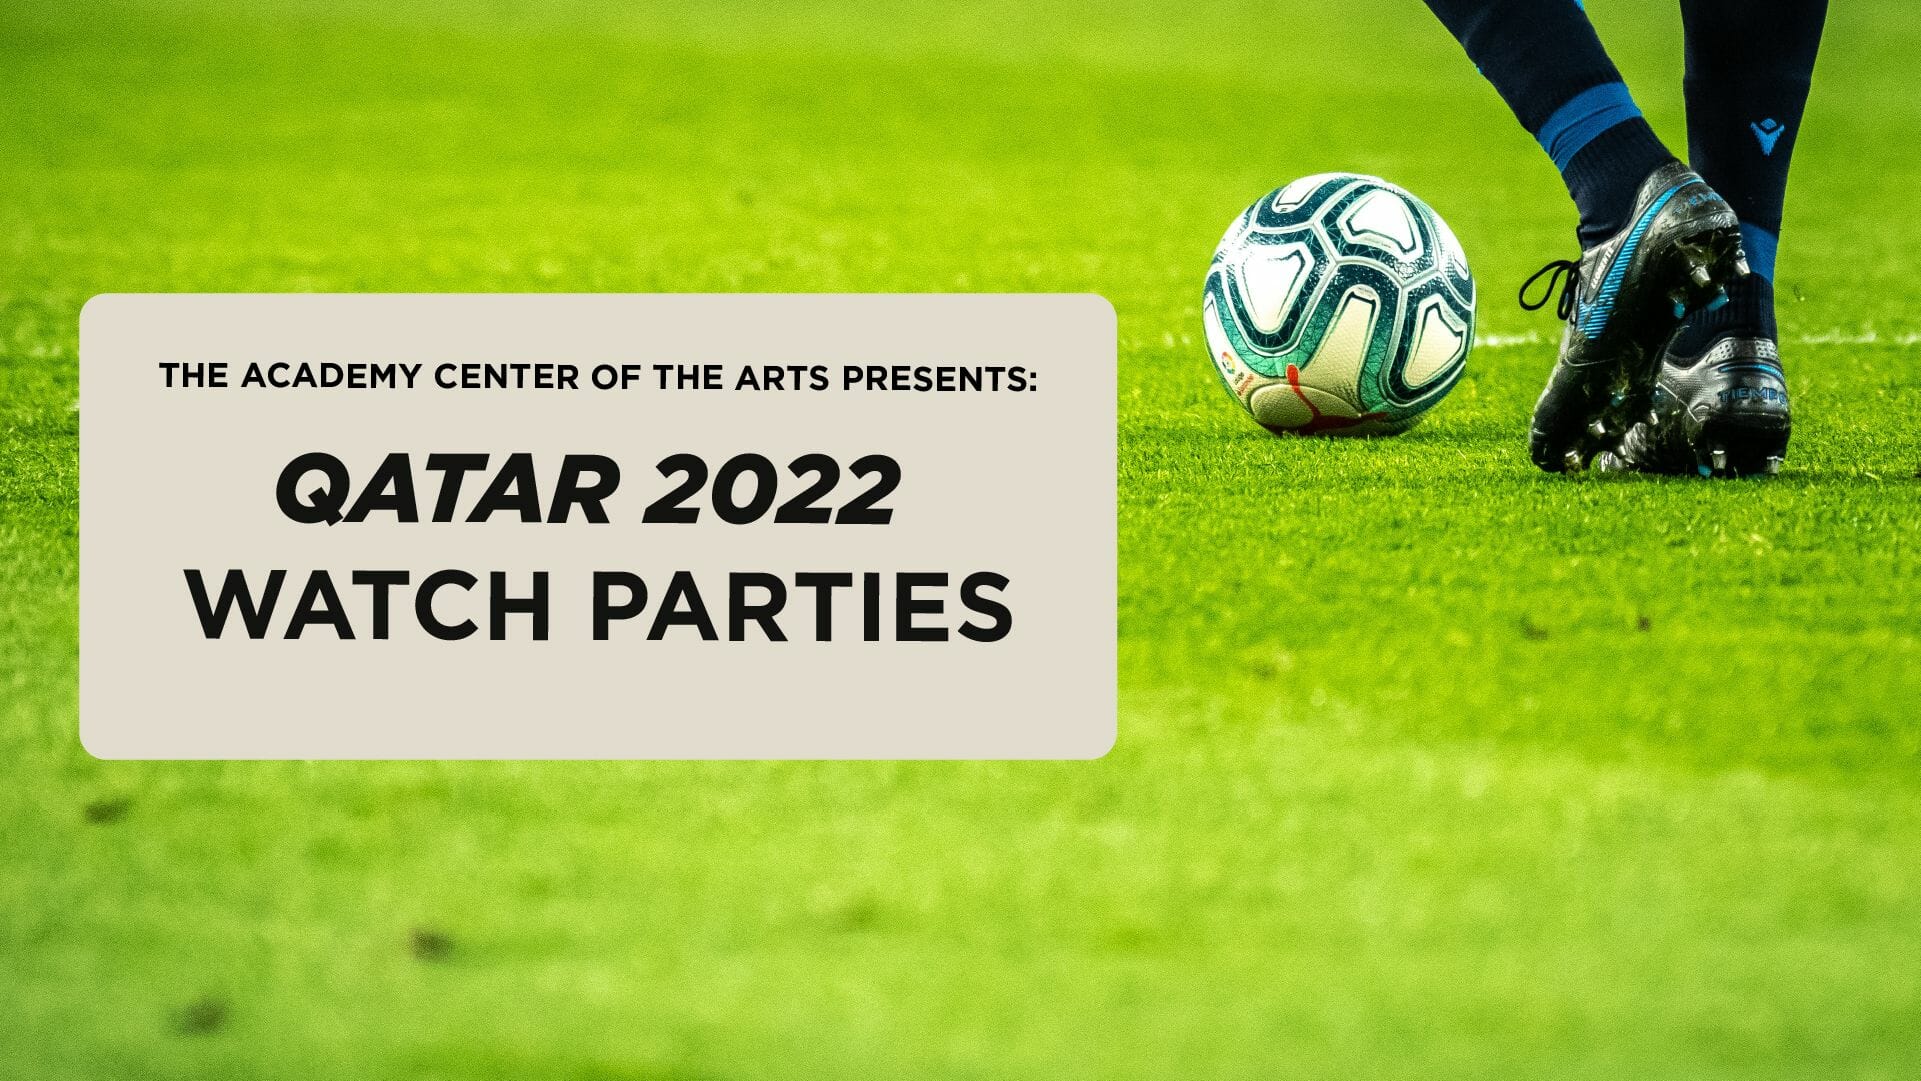 Qatar 2022 Watch Parties